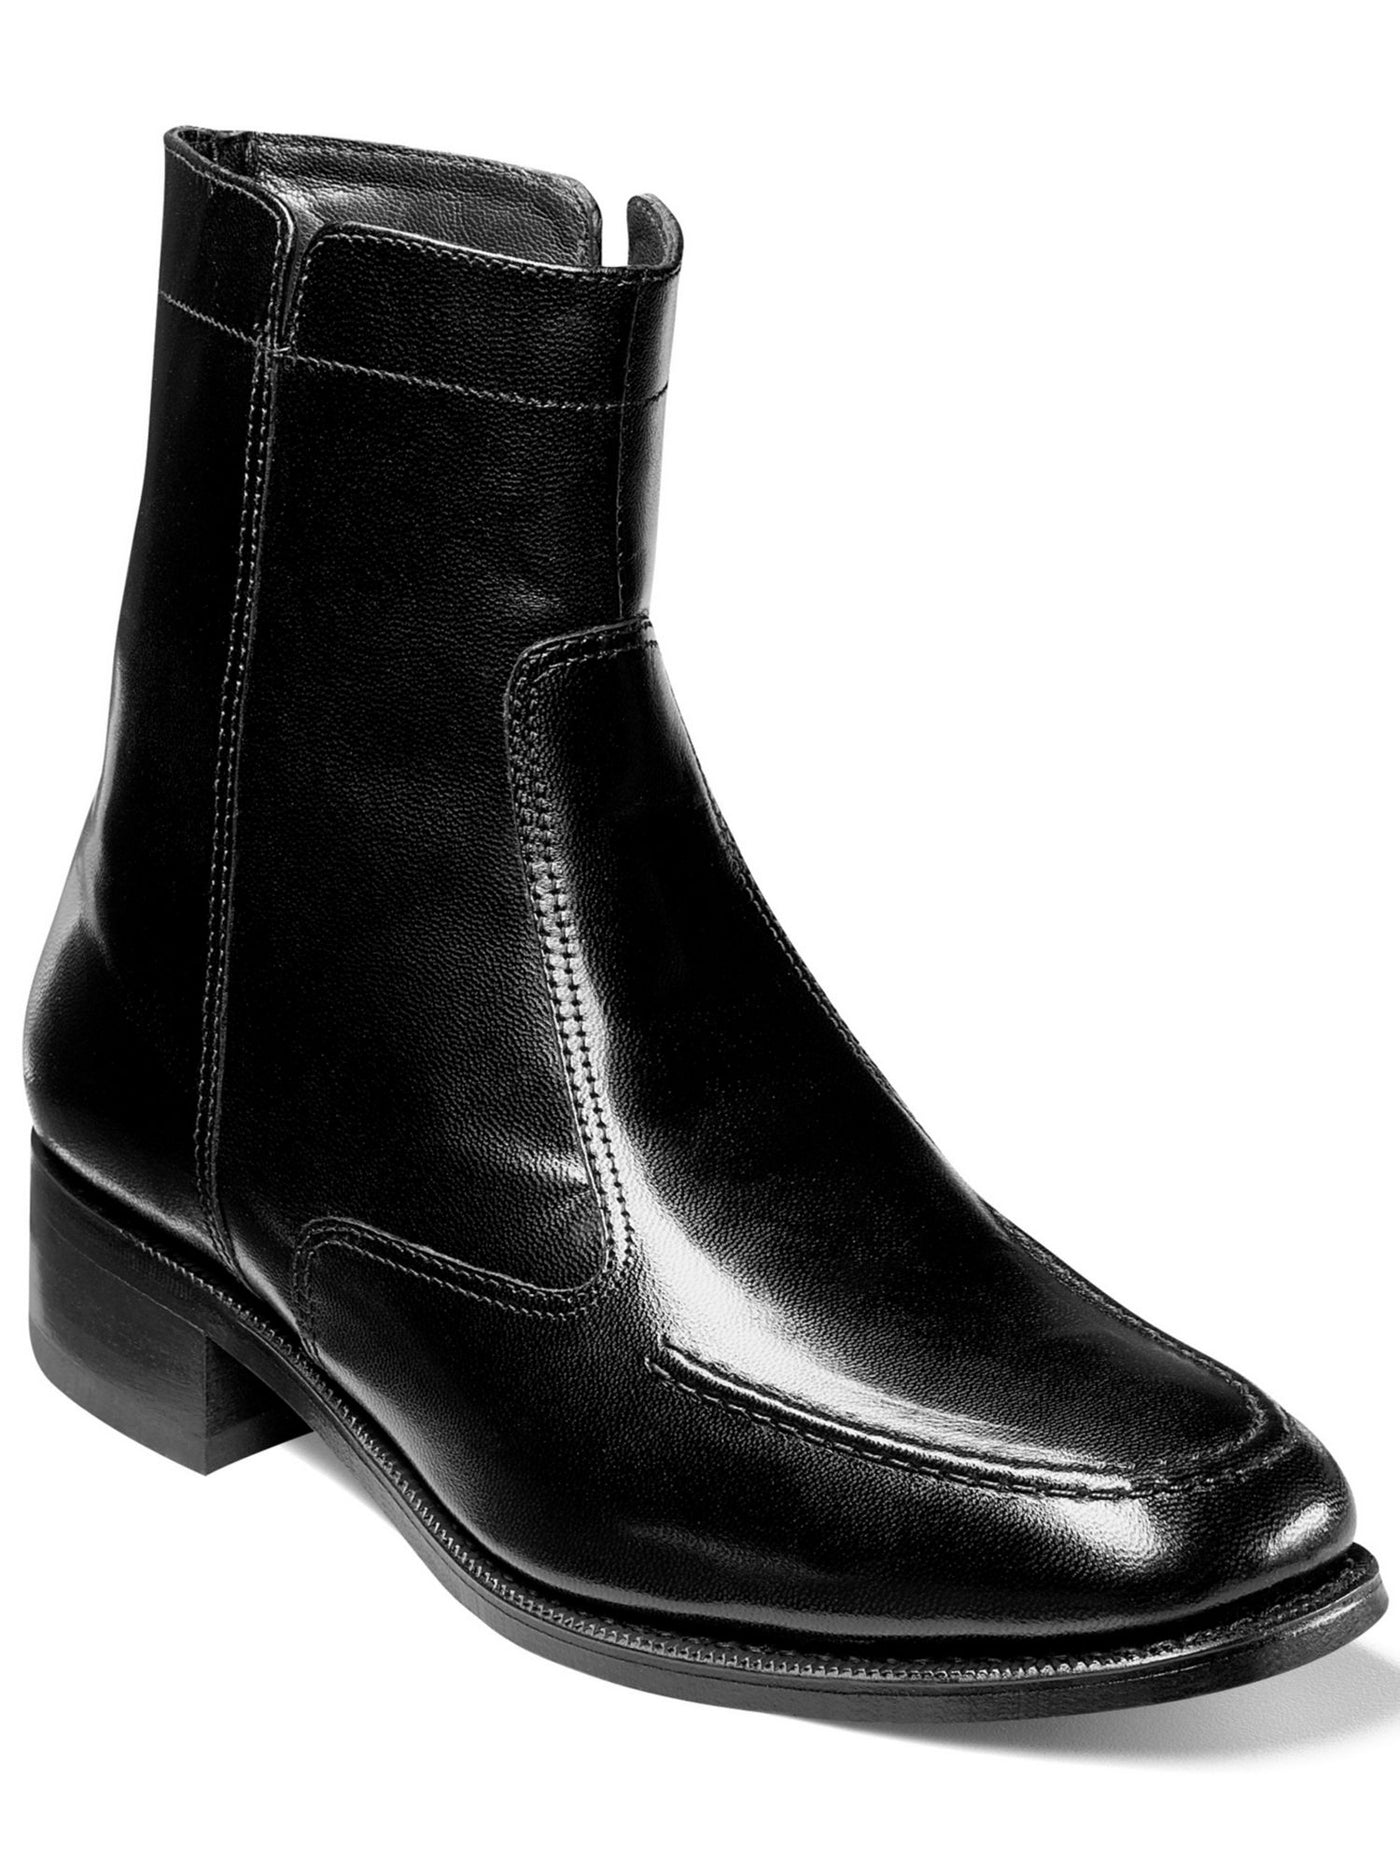 FLORSHEIM Mens Black Comfort Essex Almond Toe Block Heel Zip-Up Leather Dress Boots Shoes 10.5